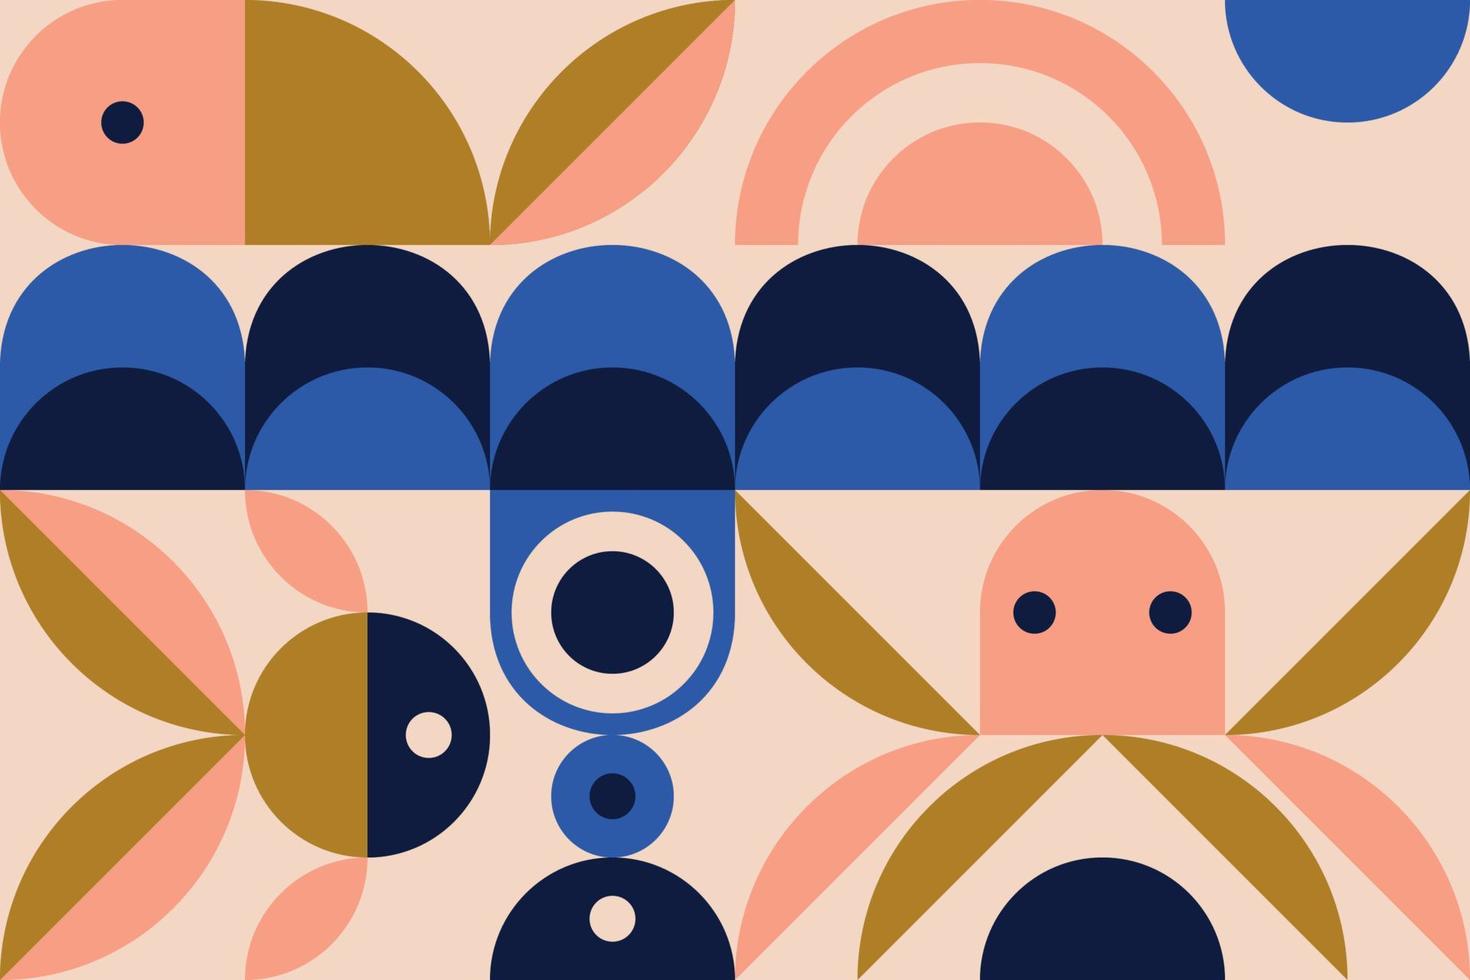 poster di opere d'arte minimaliste geometriche con forma e figura semplici. disegno astratto del modello di vettore in stile scandinavo. tema marino